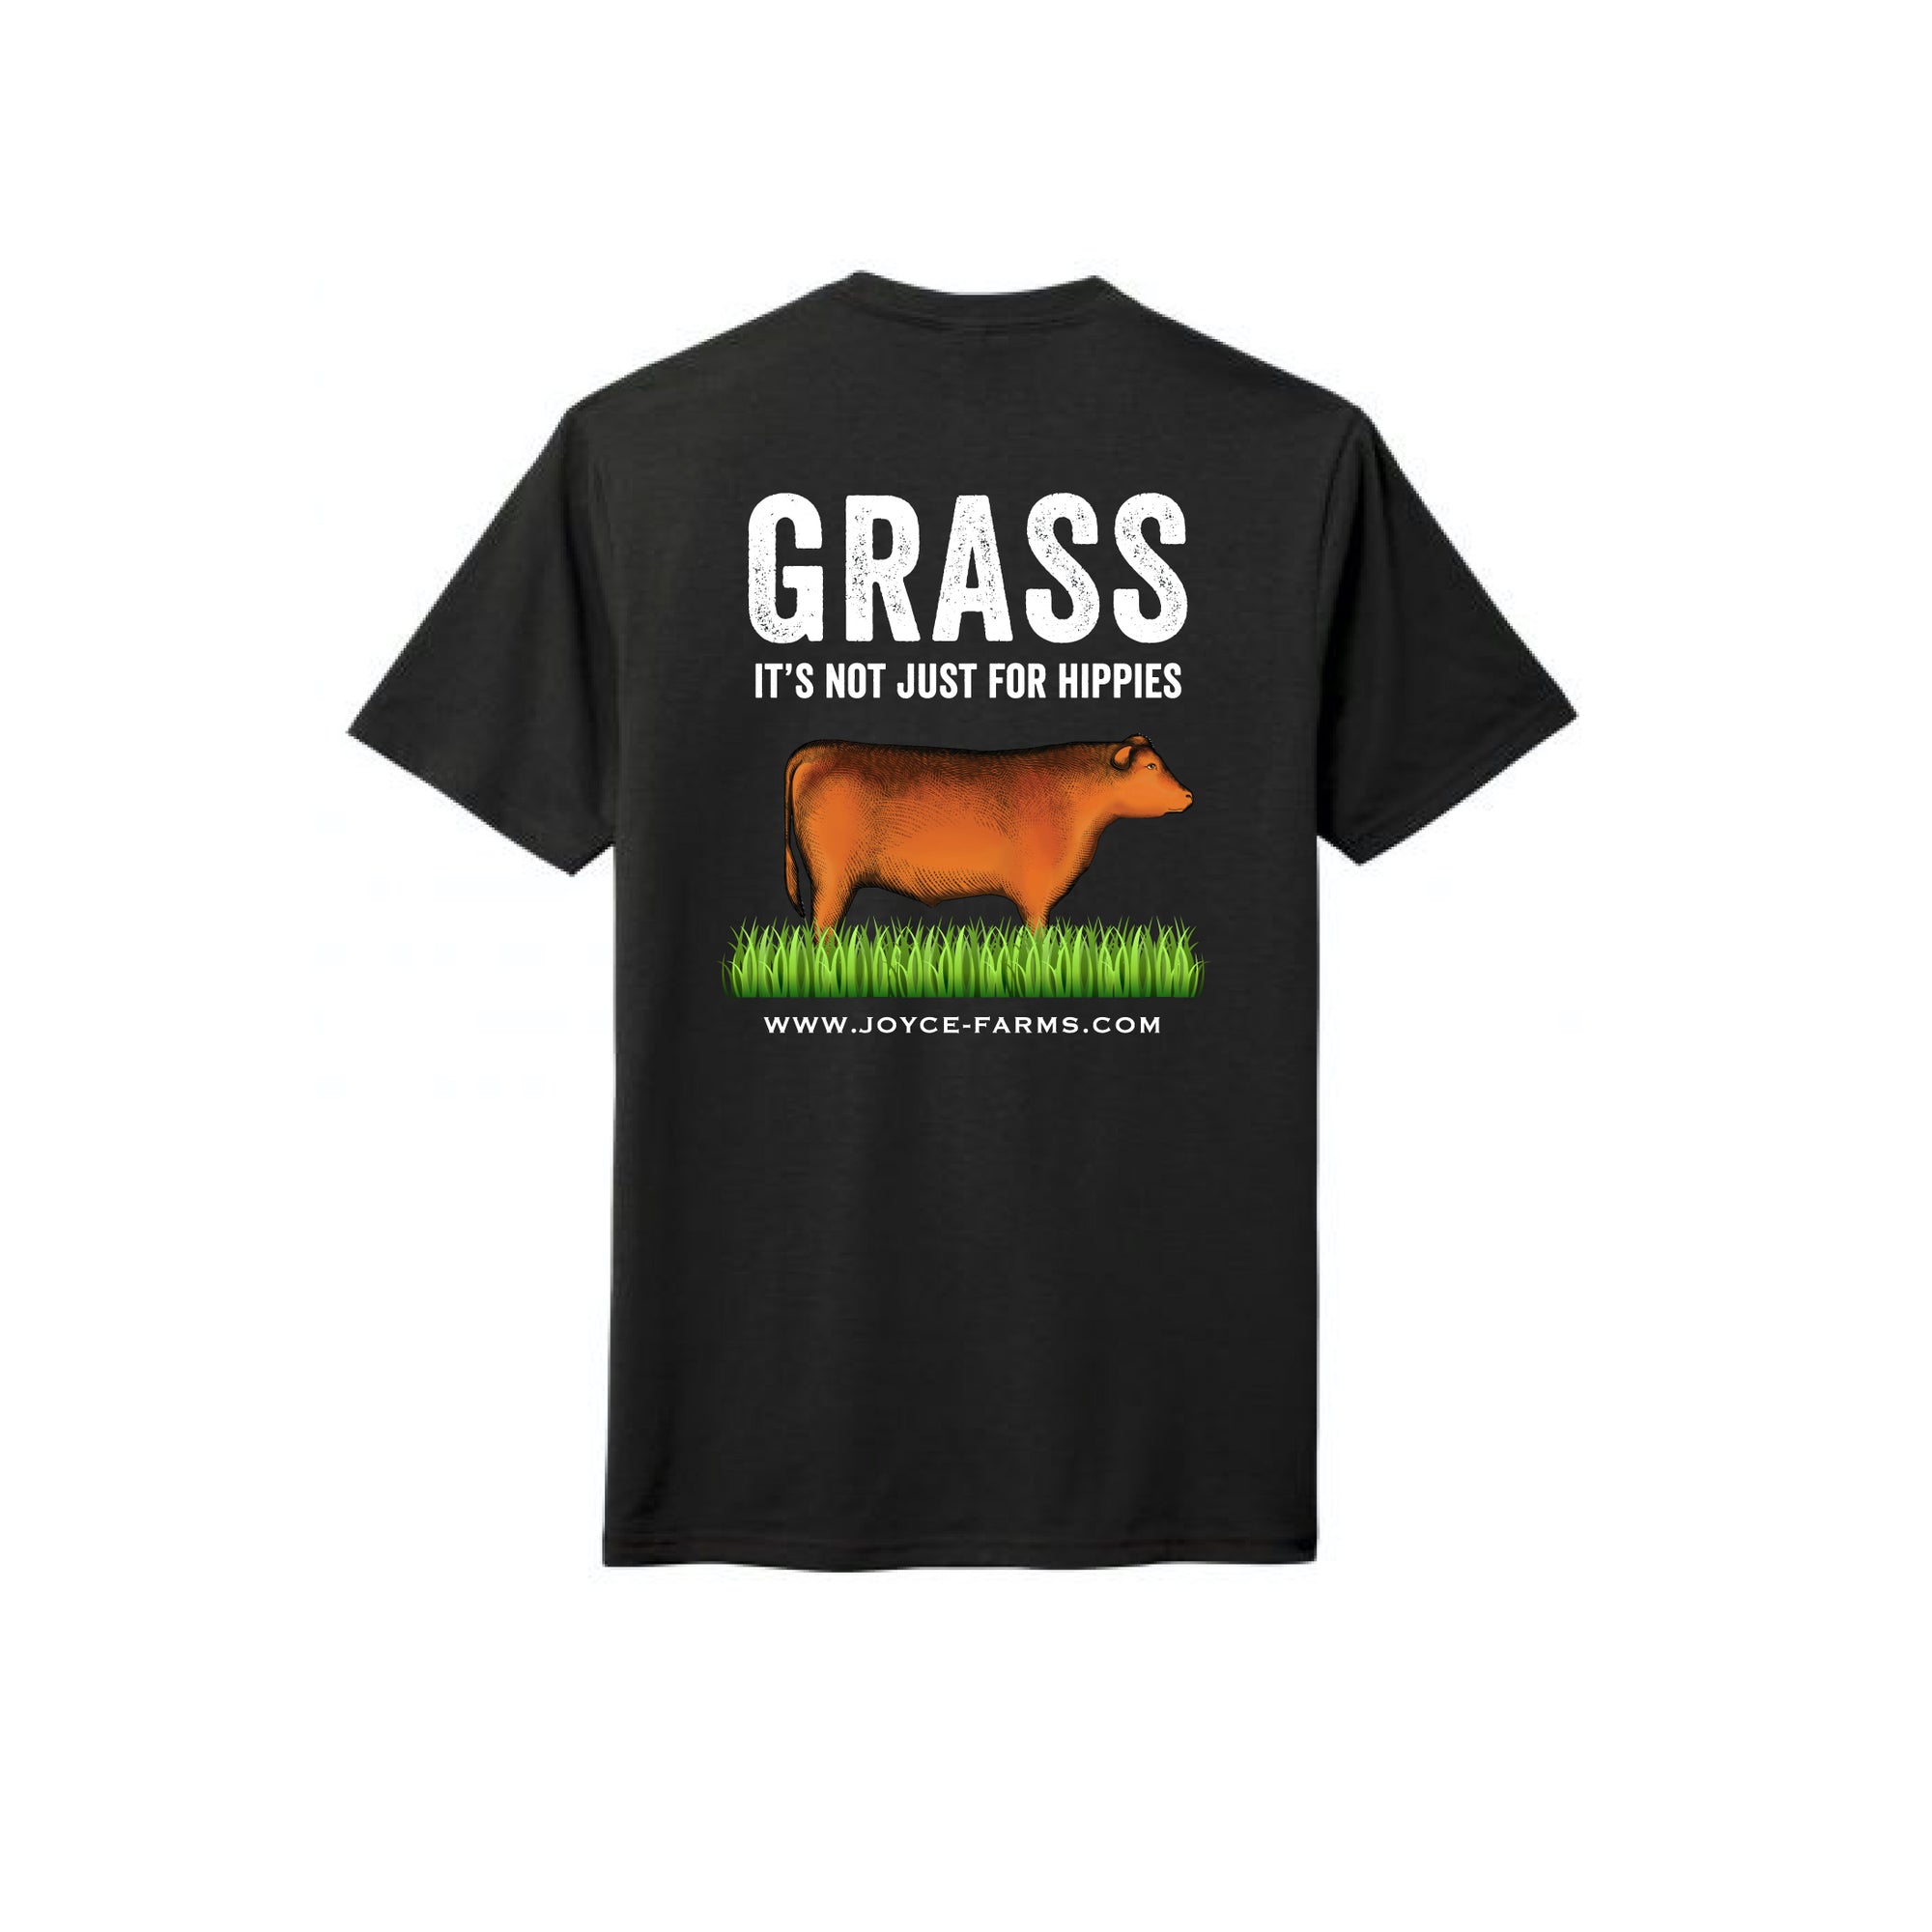 Grass-Fed Beef T-Shirt